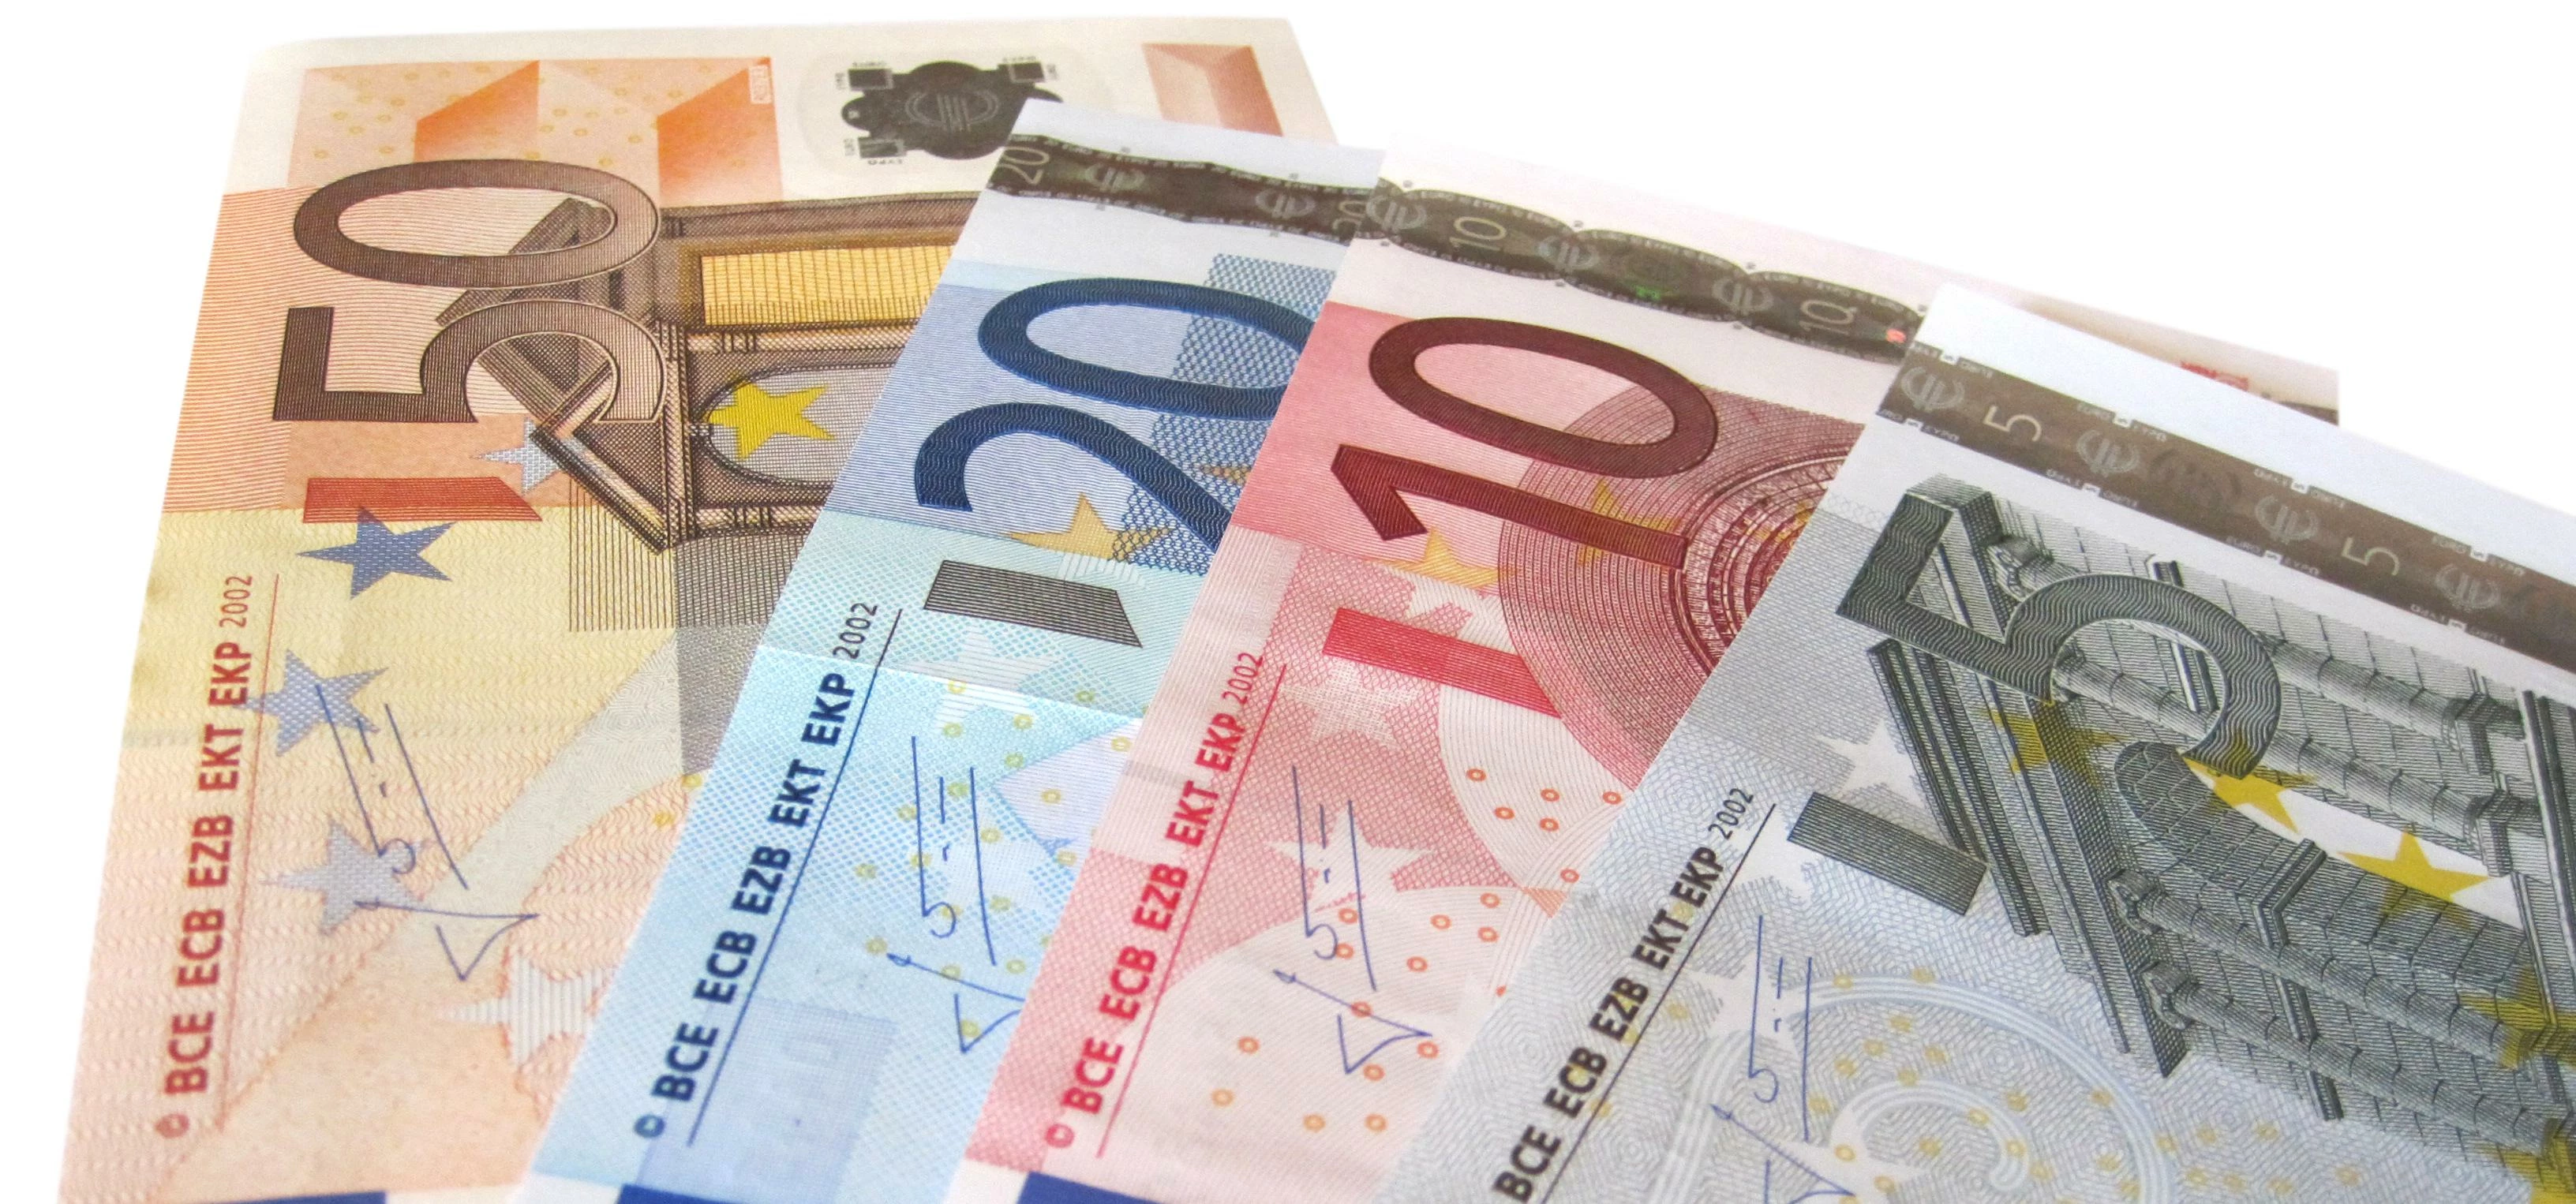 Euros Isolated on White Background